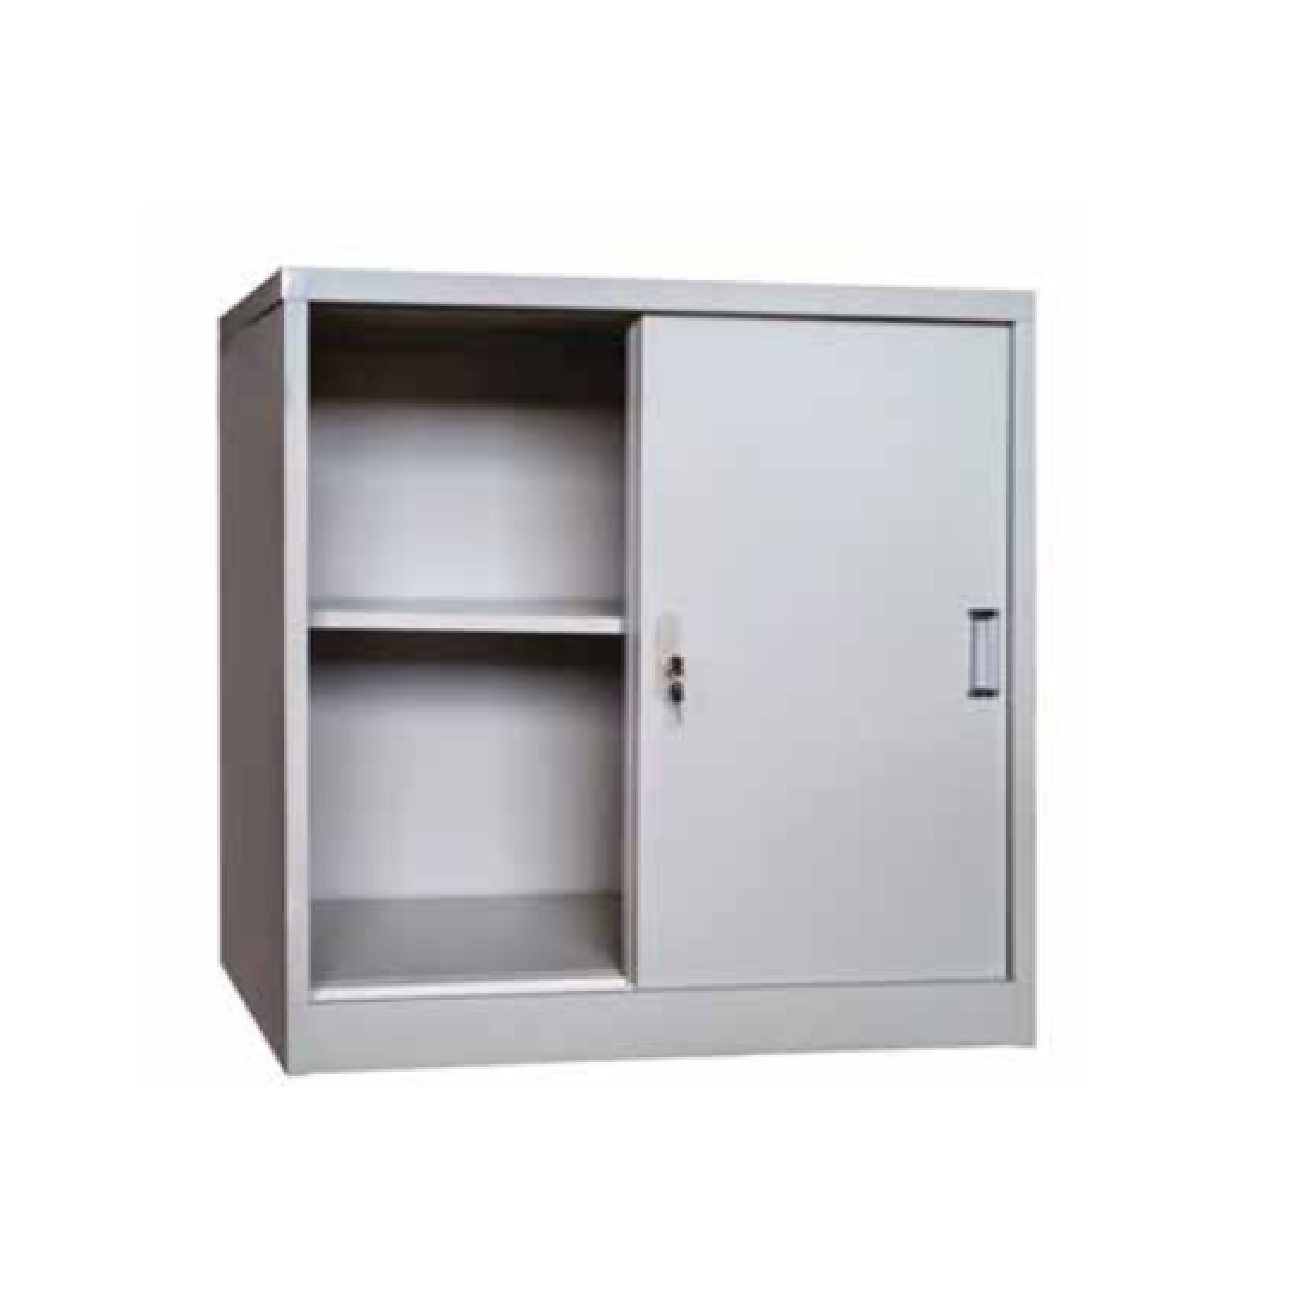 SY202 HALF HEIGHT Metal Sliding Door Cabinet